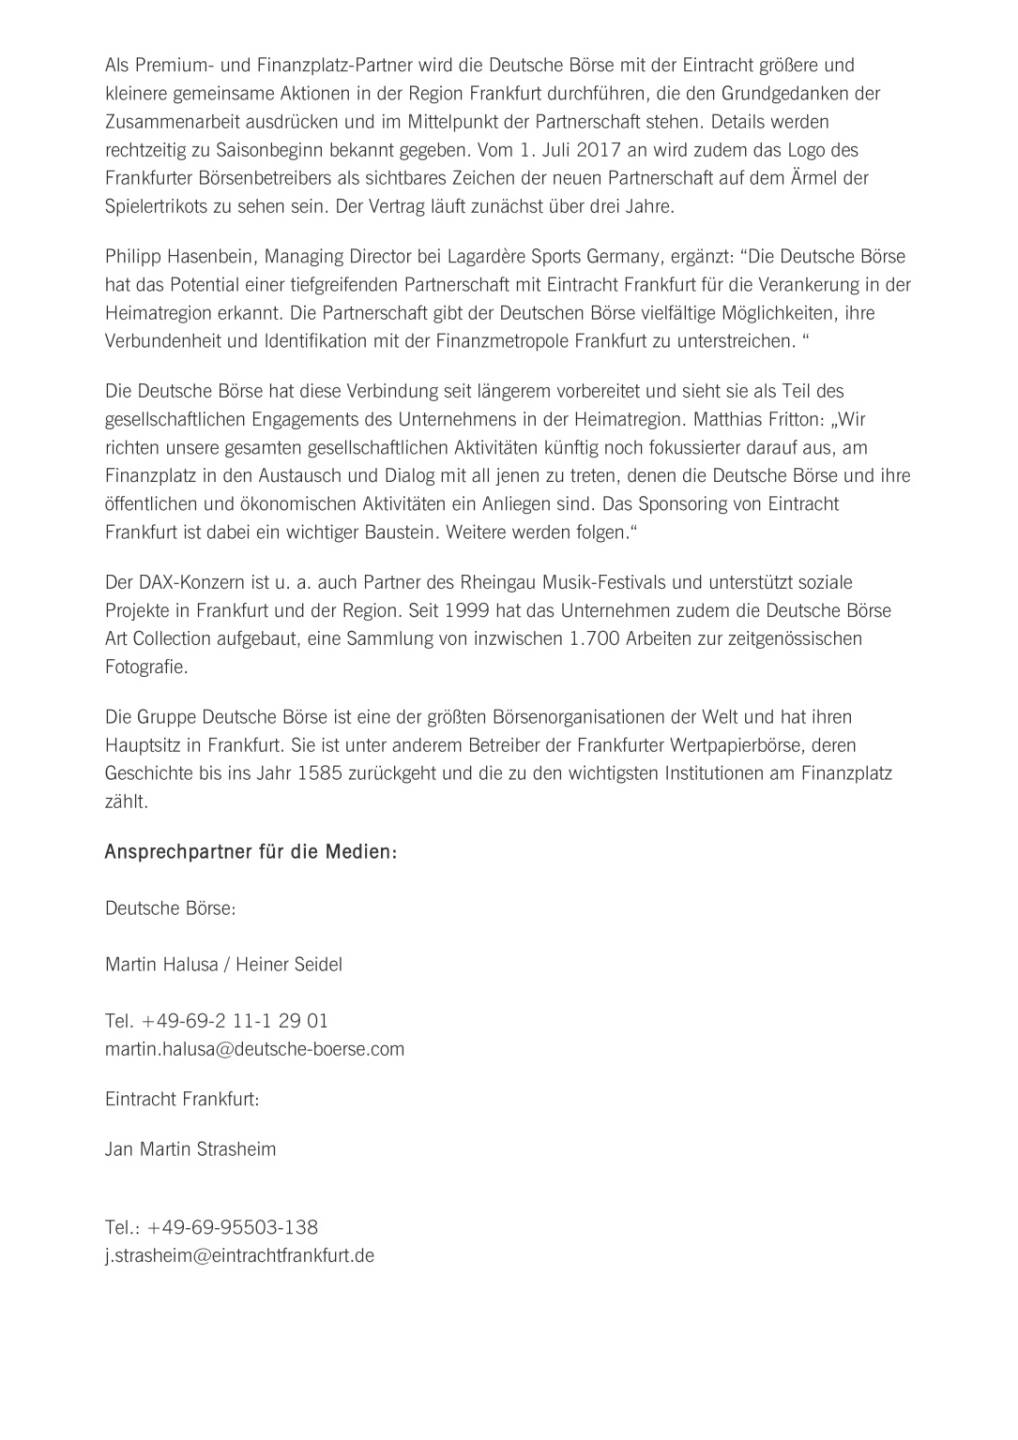 Deutsche Börse und Eintracht Frankfurt gehen Partnerschaft ein, Seite 2/3, komplettes Dokument unter http://boerse-social.com/static/uploads/file_2262_deutsche_borse_und_eintracht_frankfurt_gehen_partnerschaft_ein.pdf